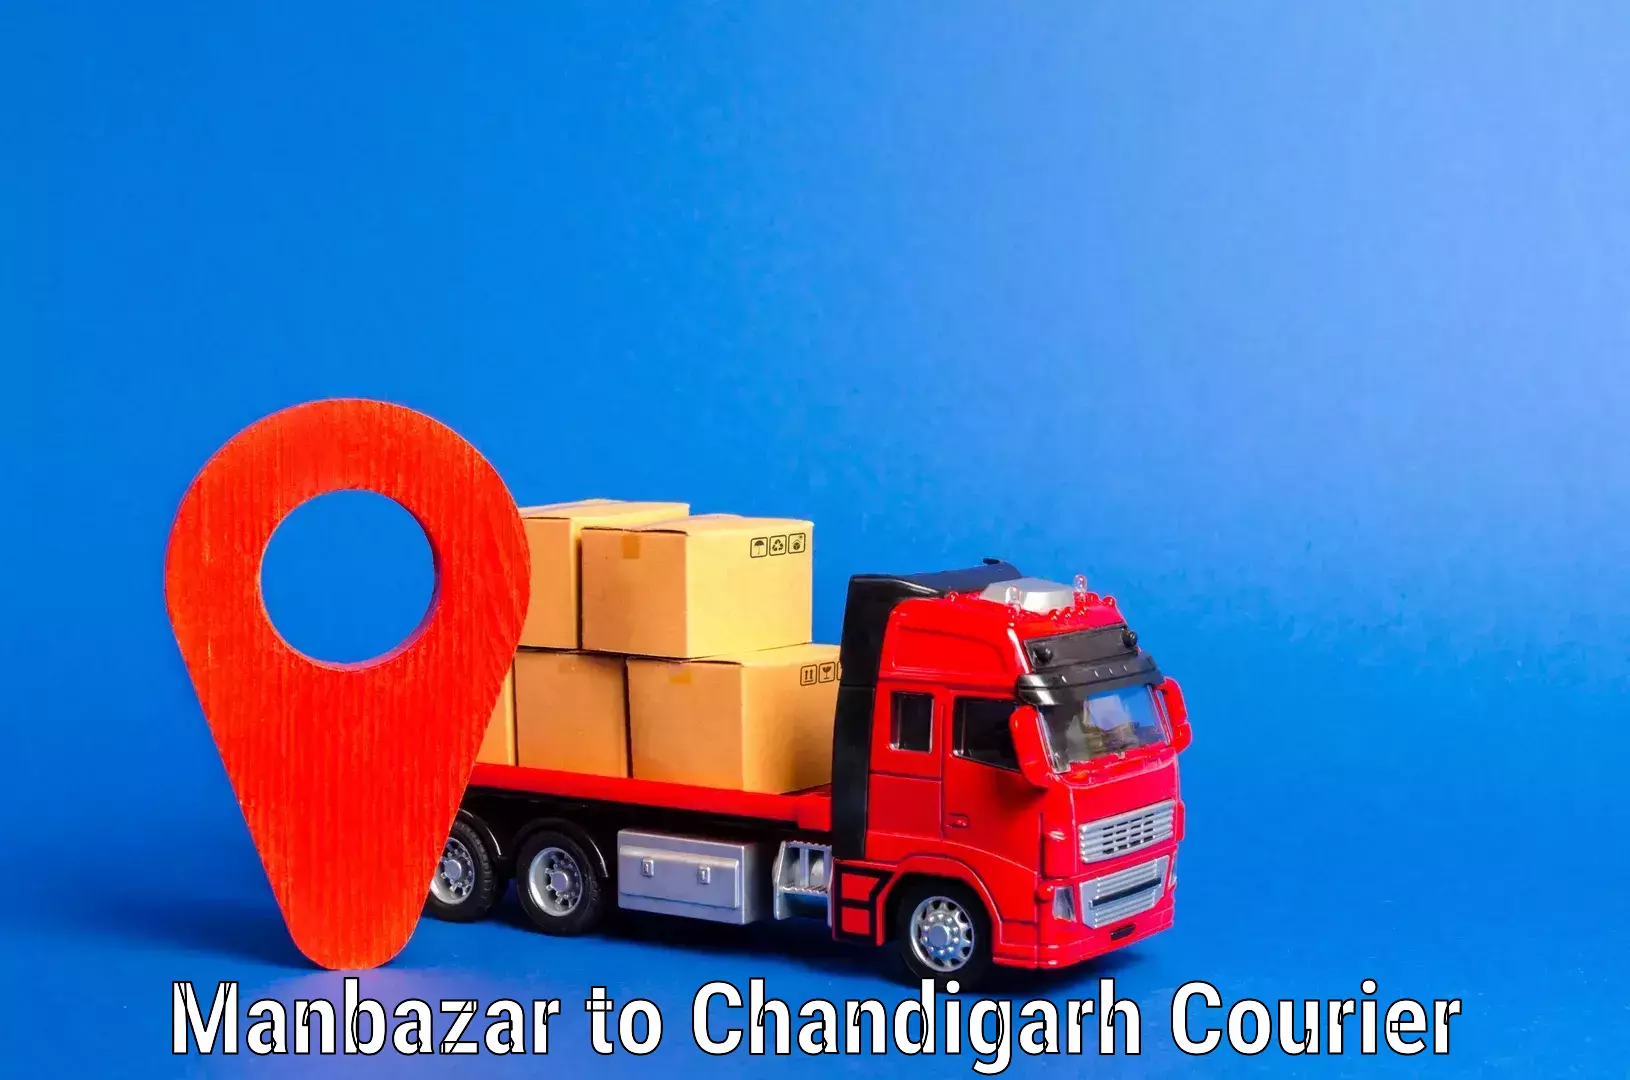 Furniture transport experts Manbazar to Chandigarh